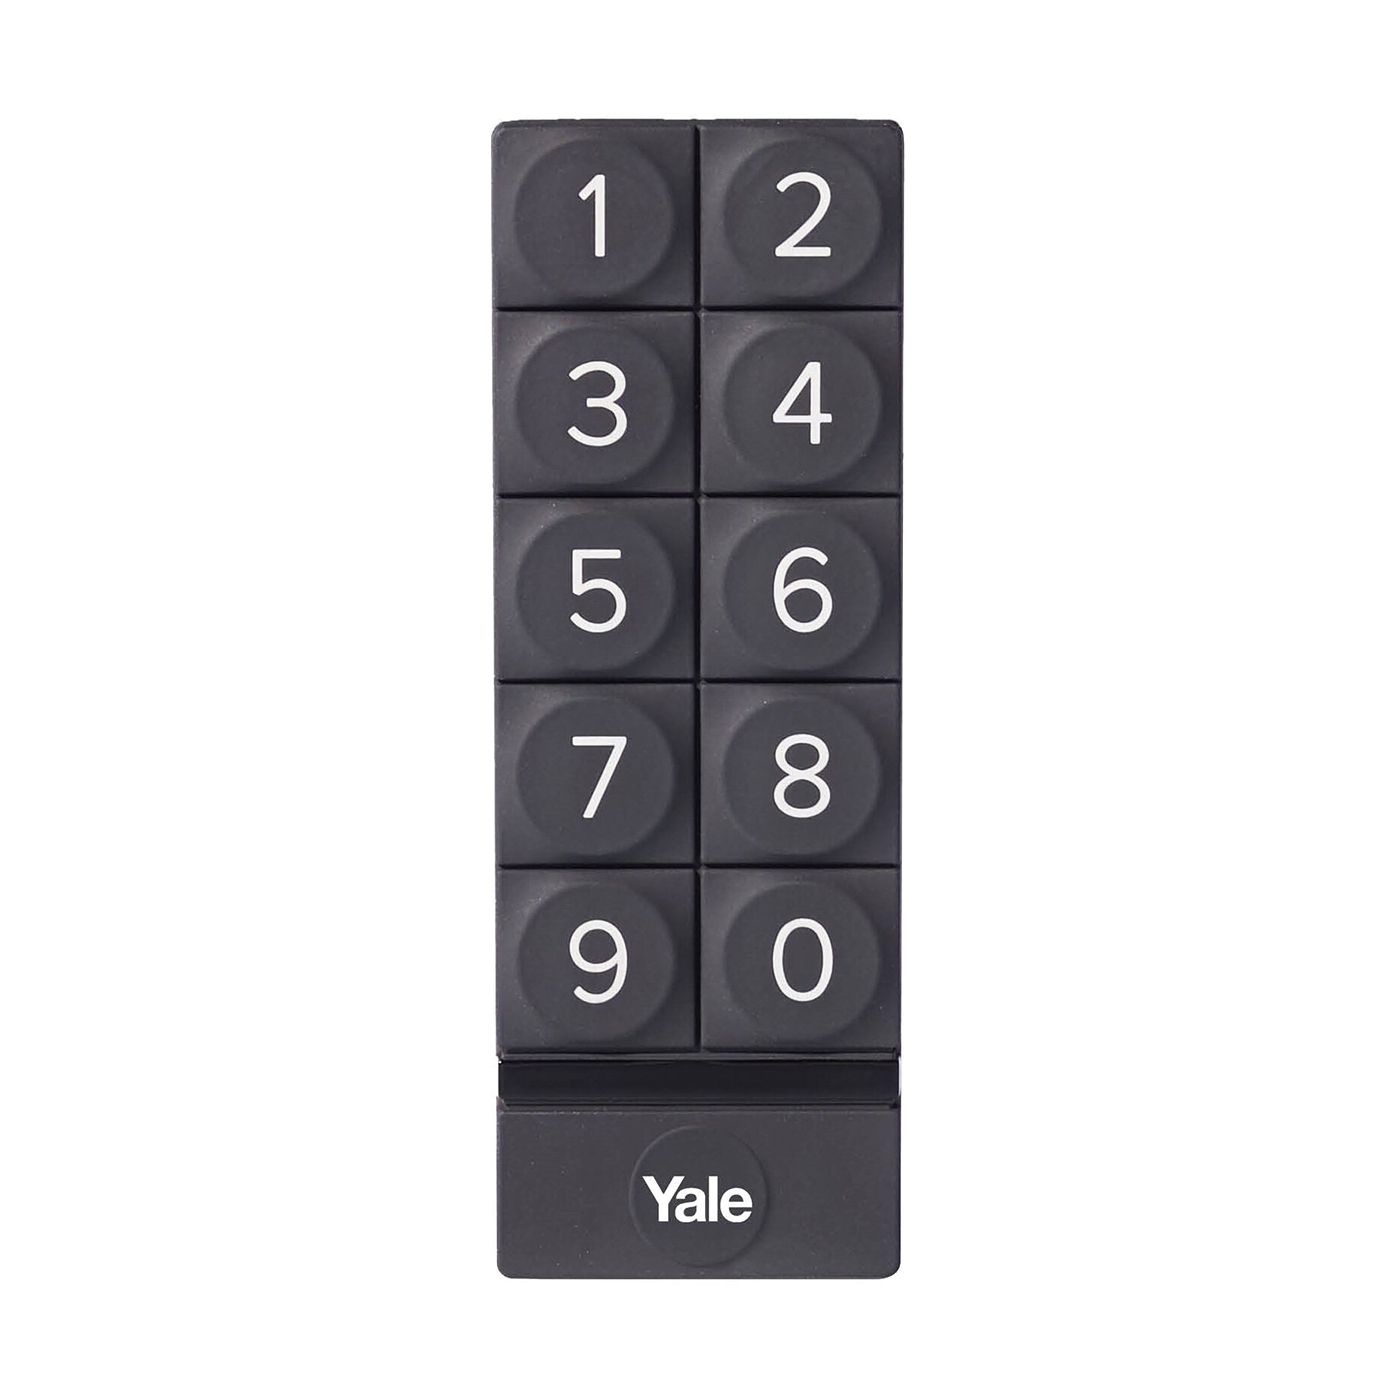 Inteligentny zamek Yale Linus Smart Lock L2 srebrny - zestaw z klawiaturą numeryczną Yale - Smart Keypad